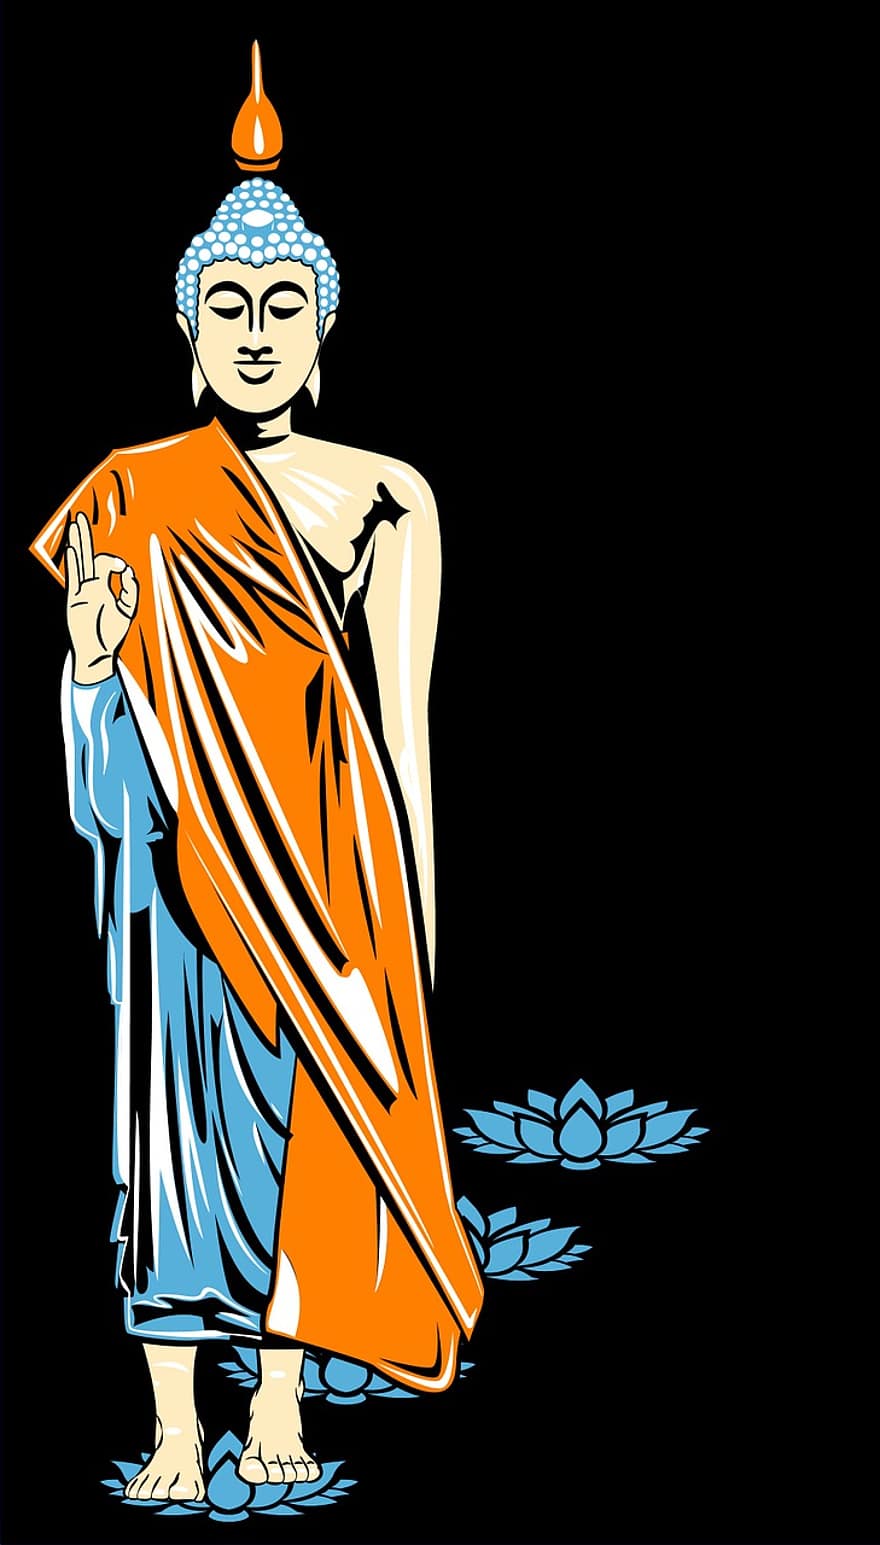 Buda, imagen, impresión de pantalla, budismo, Amida, loto, flor de loto, este, zen, meditación, yoga